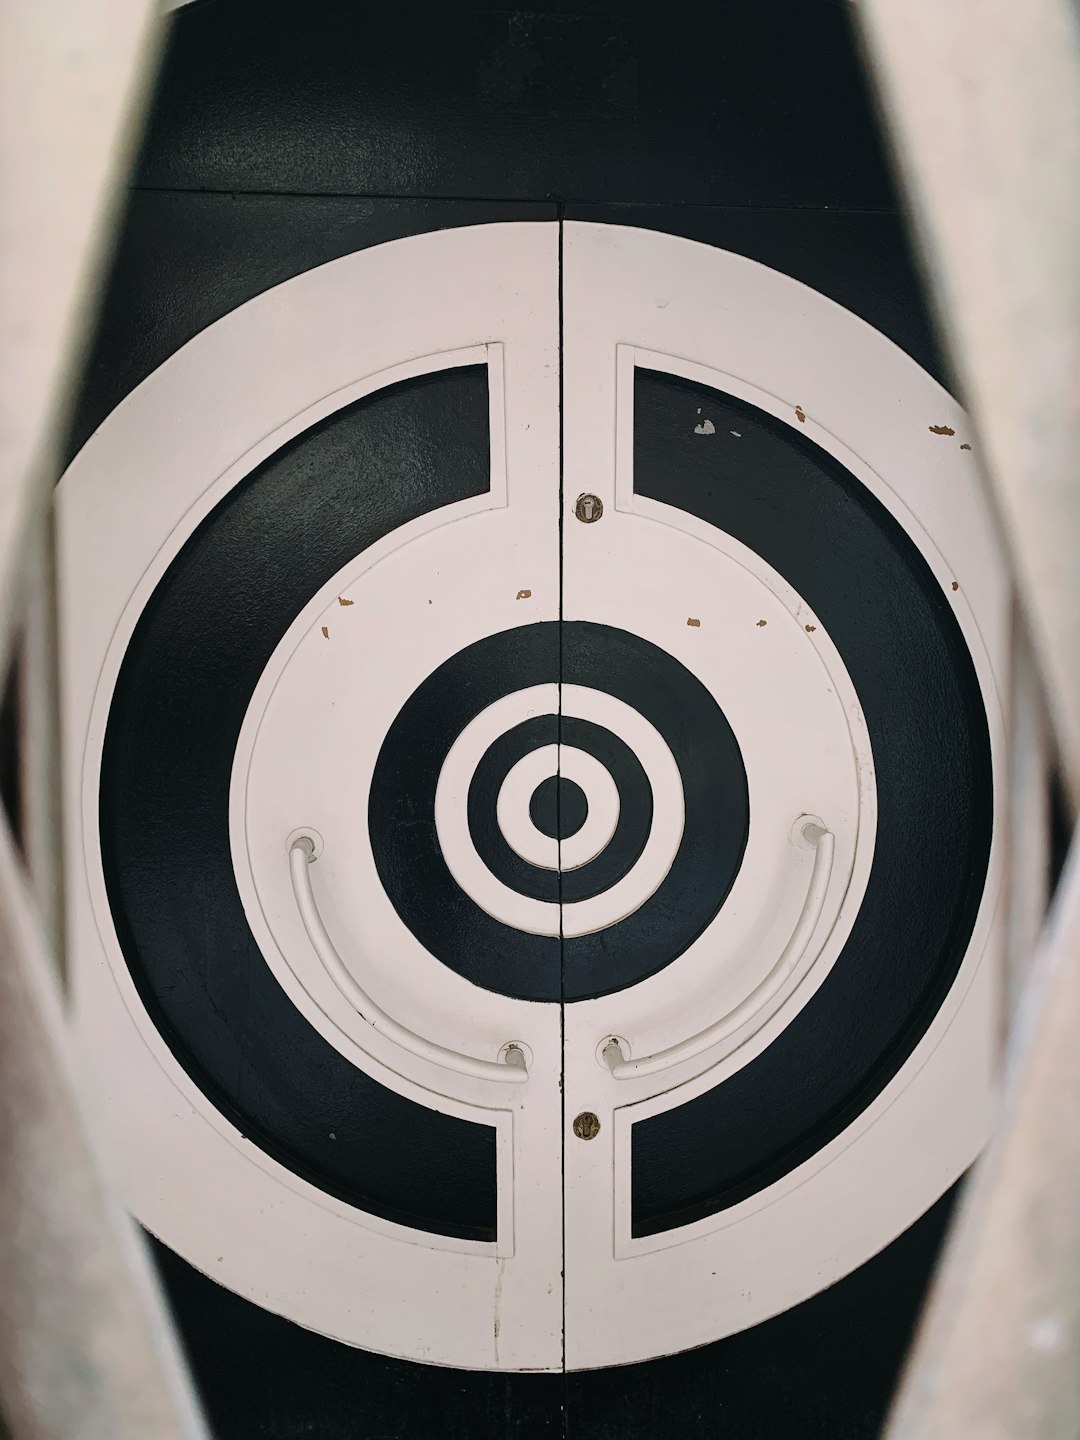 white and black bullseye target